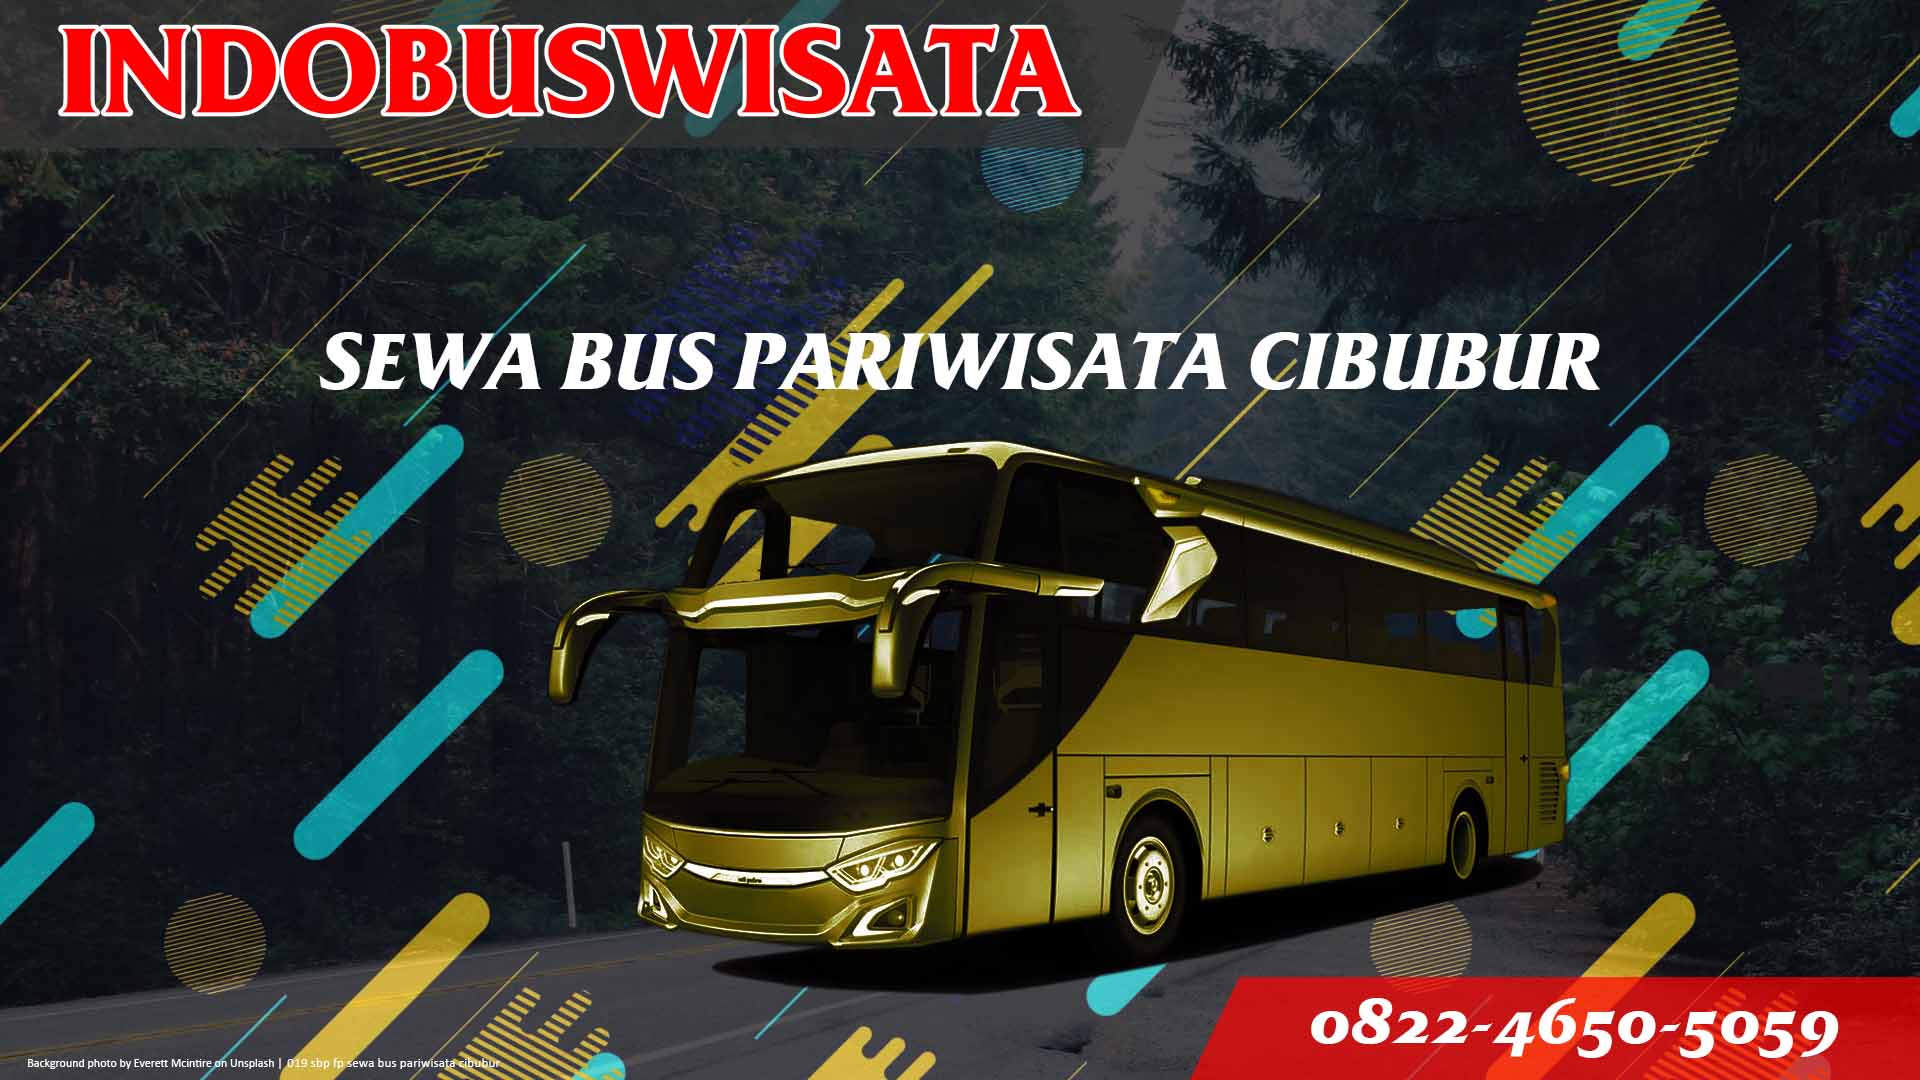 019 Sbp Fp Sewa Bus Pariwisata Cibubur Indobuswisata